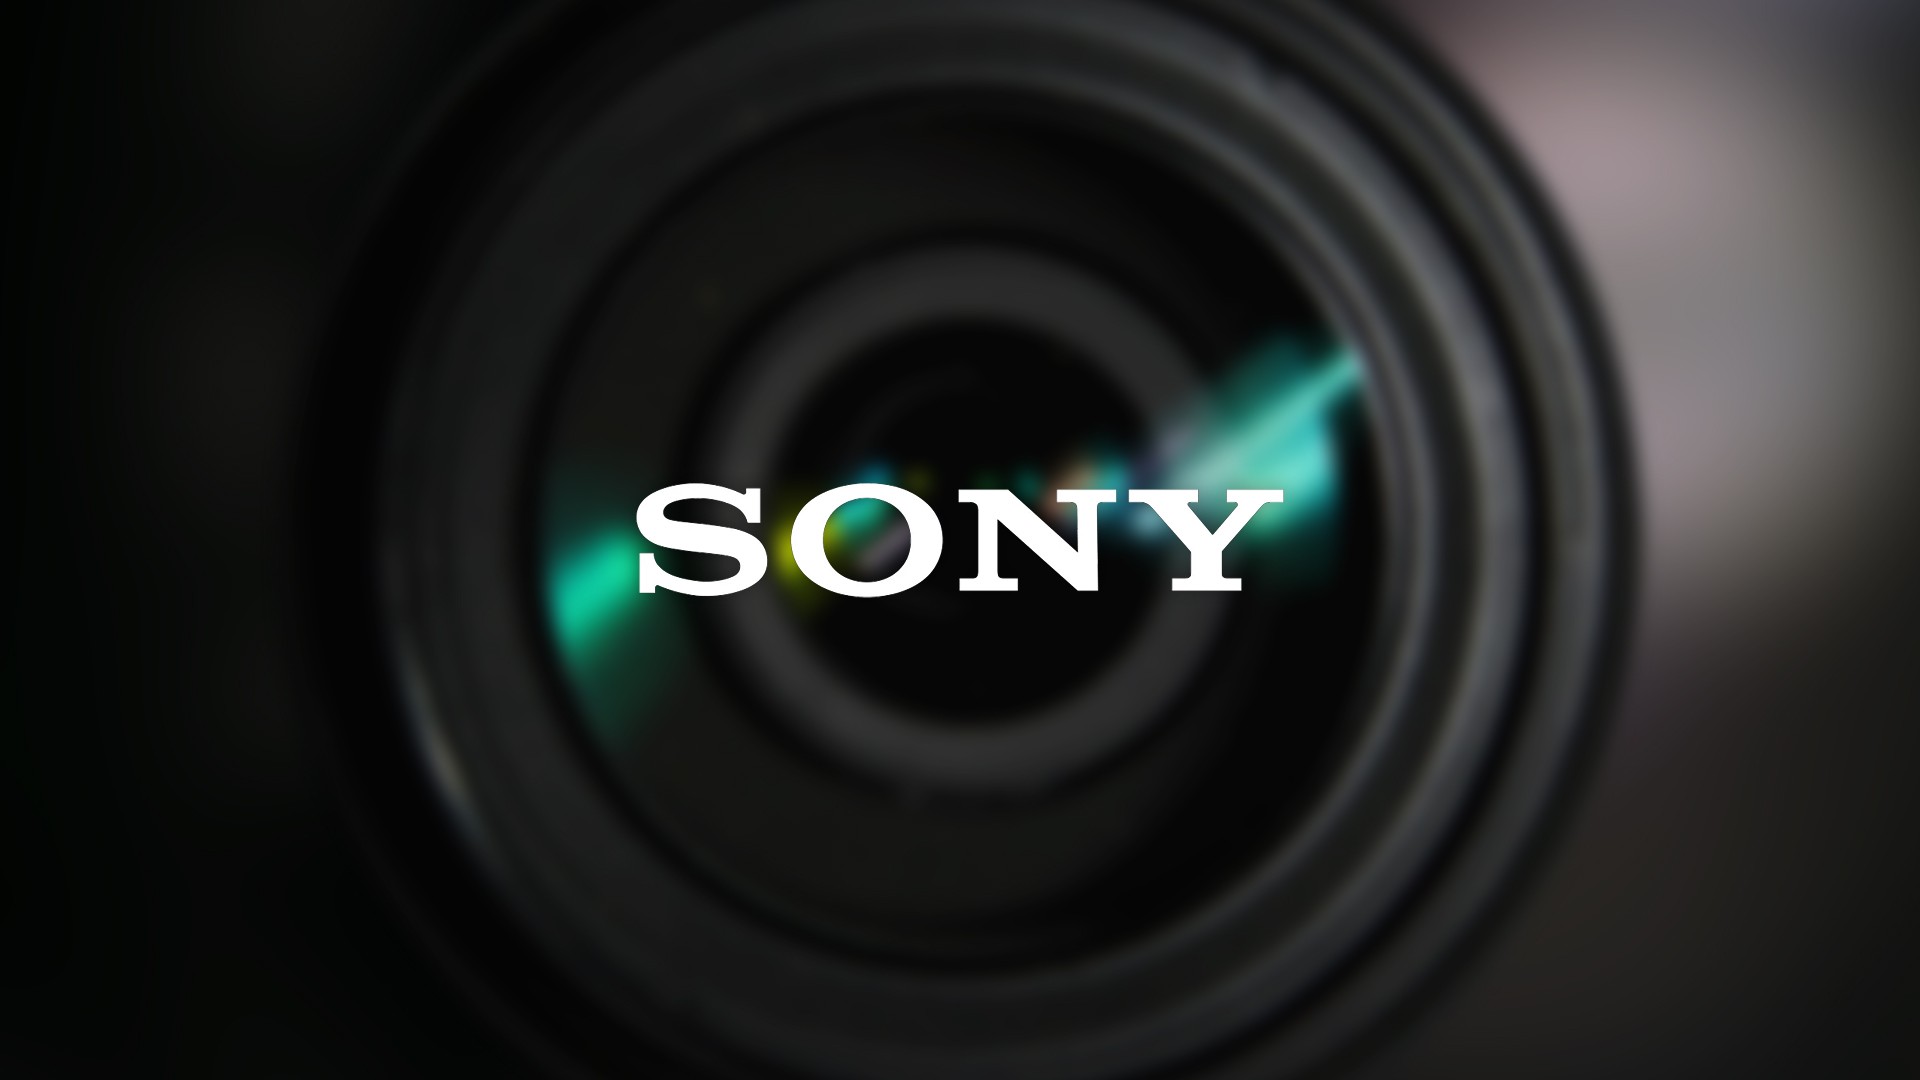 Sony apresenta nova tecnologia de sensores de imagem empilhados que enxergam no escuro